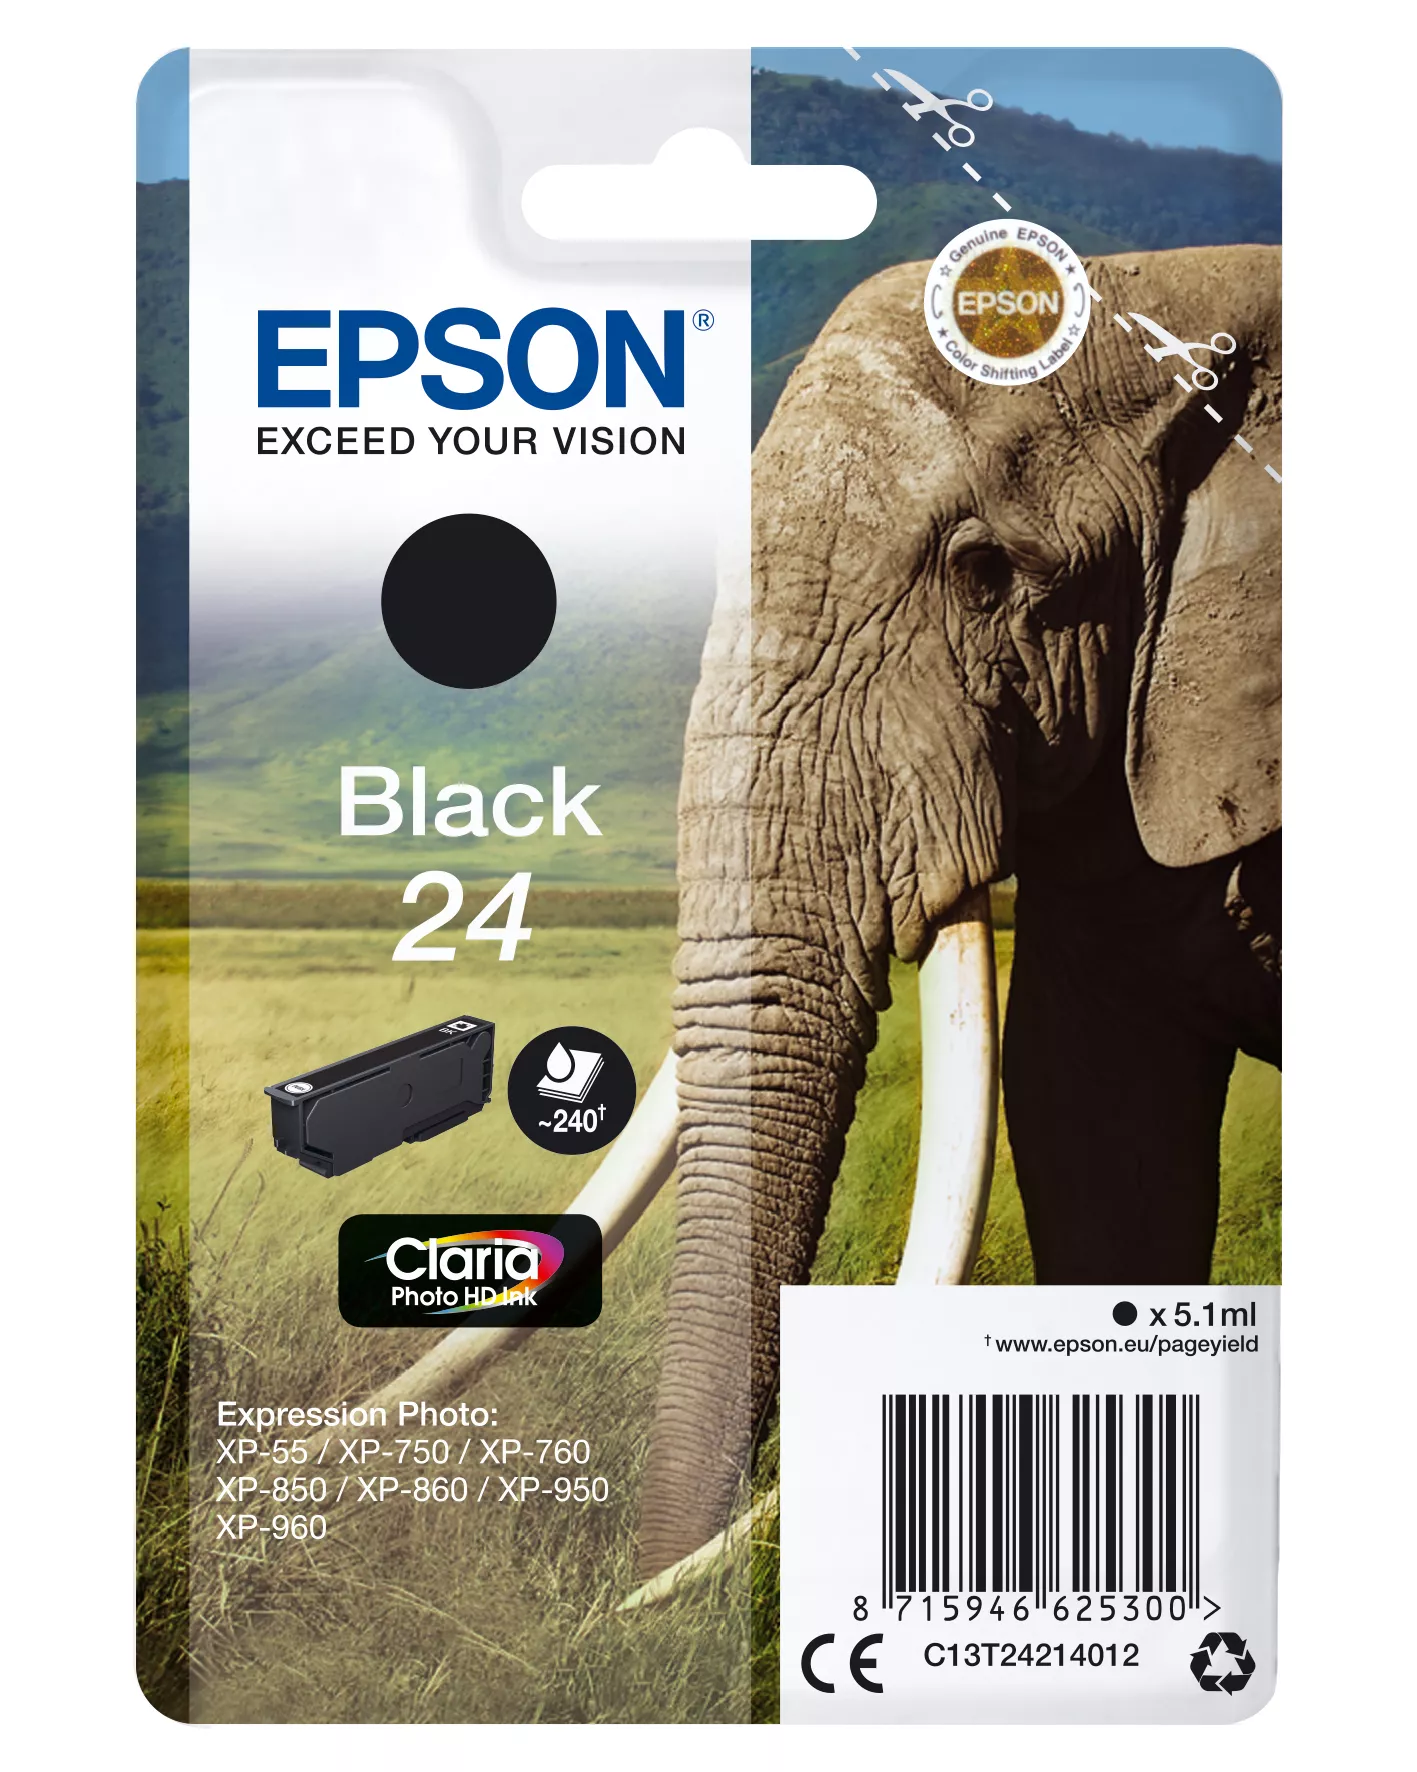 Achat EPSON 24 cartouche encre noir capacité standard 5.1ml 240 au meilleur prix